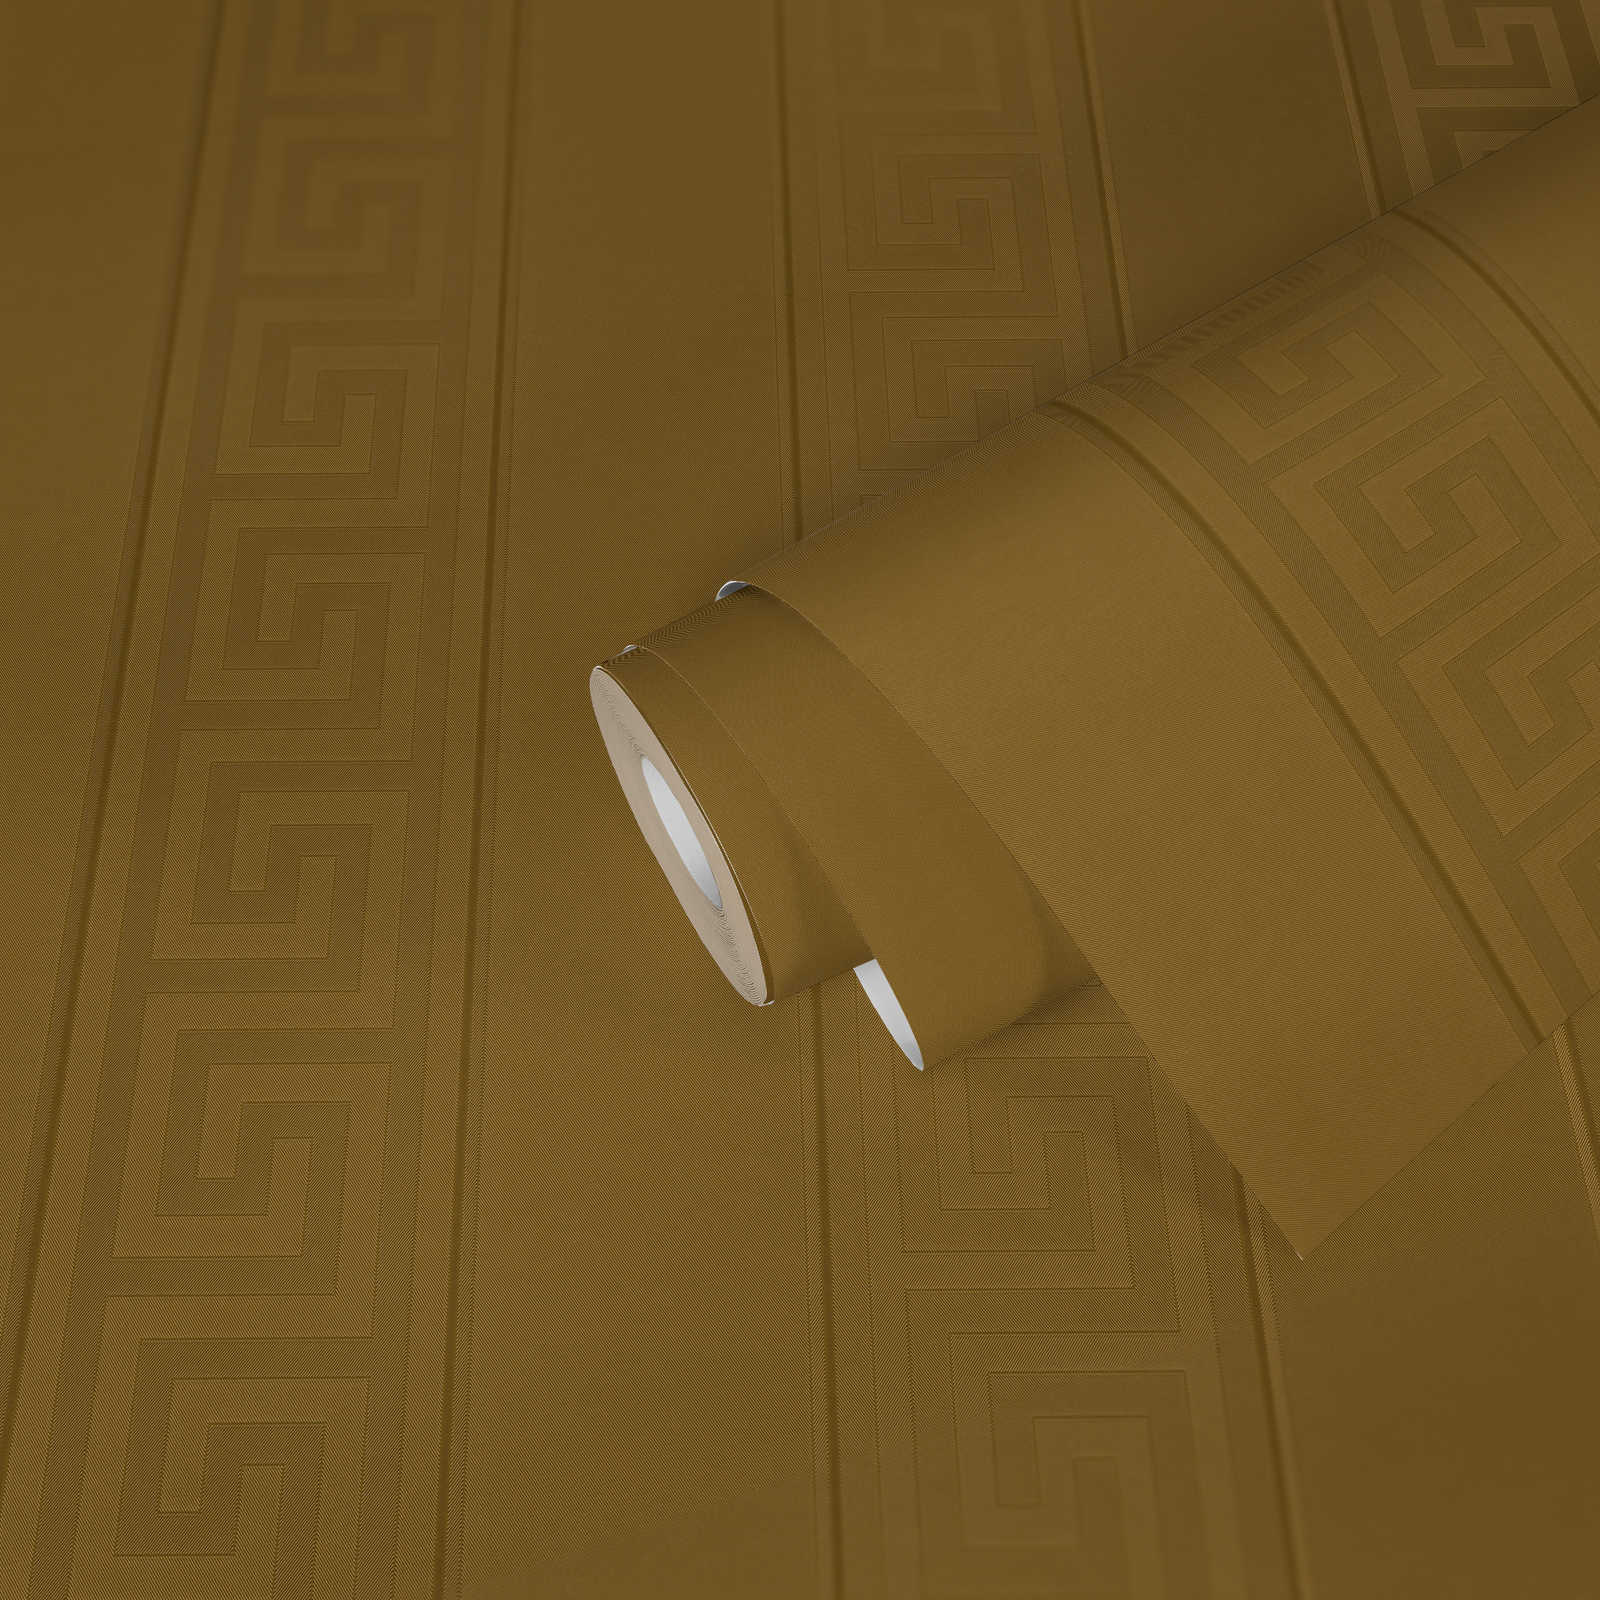             VERSACE wallpaper Golden Meander - Metallic
        